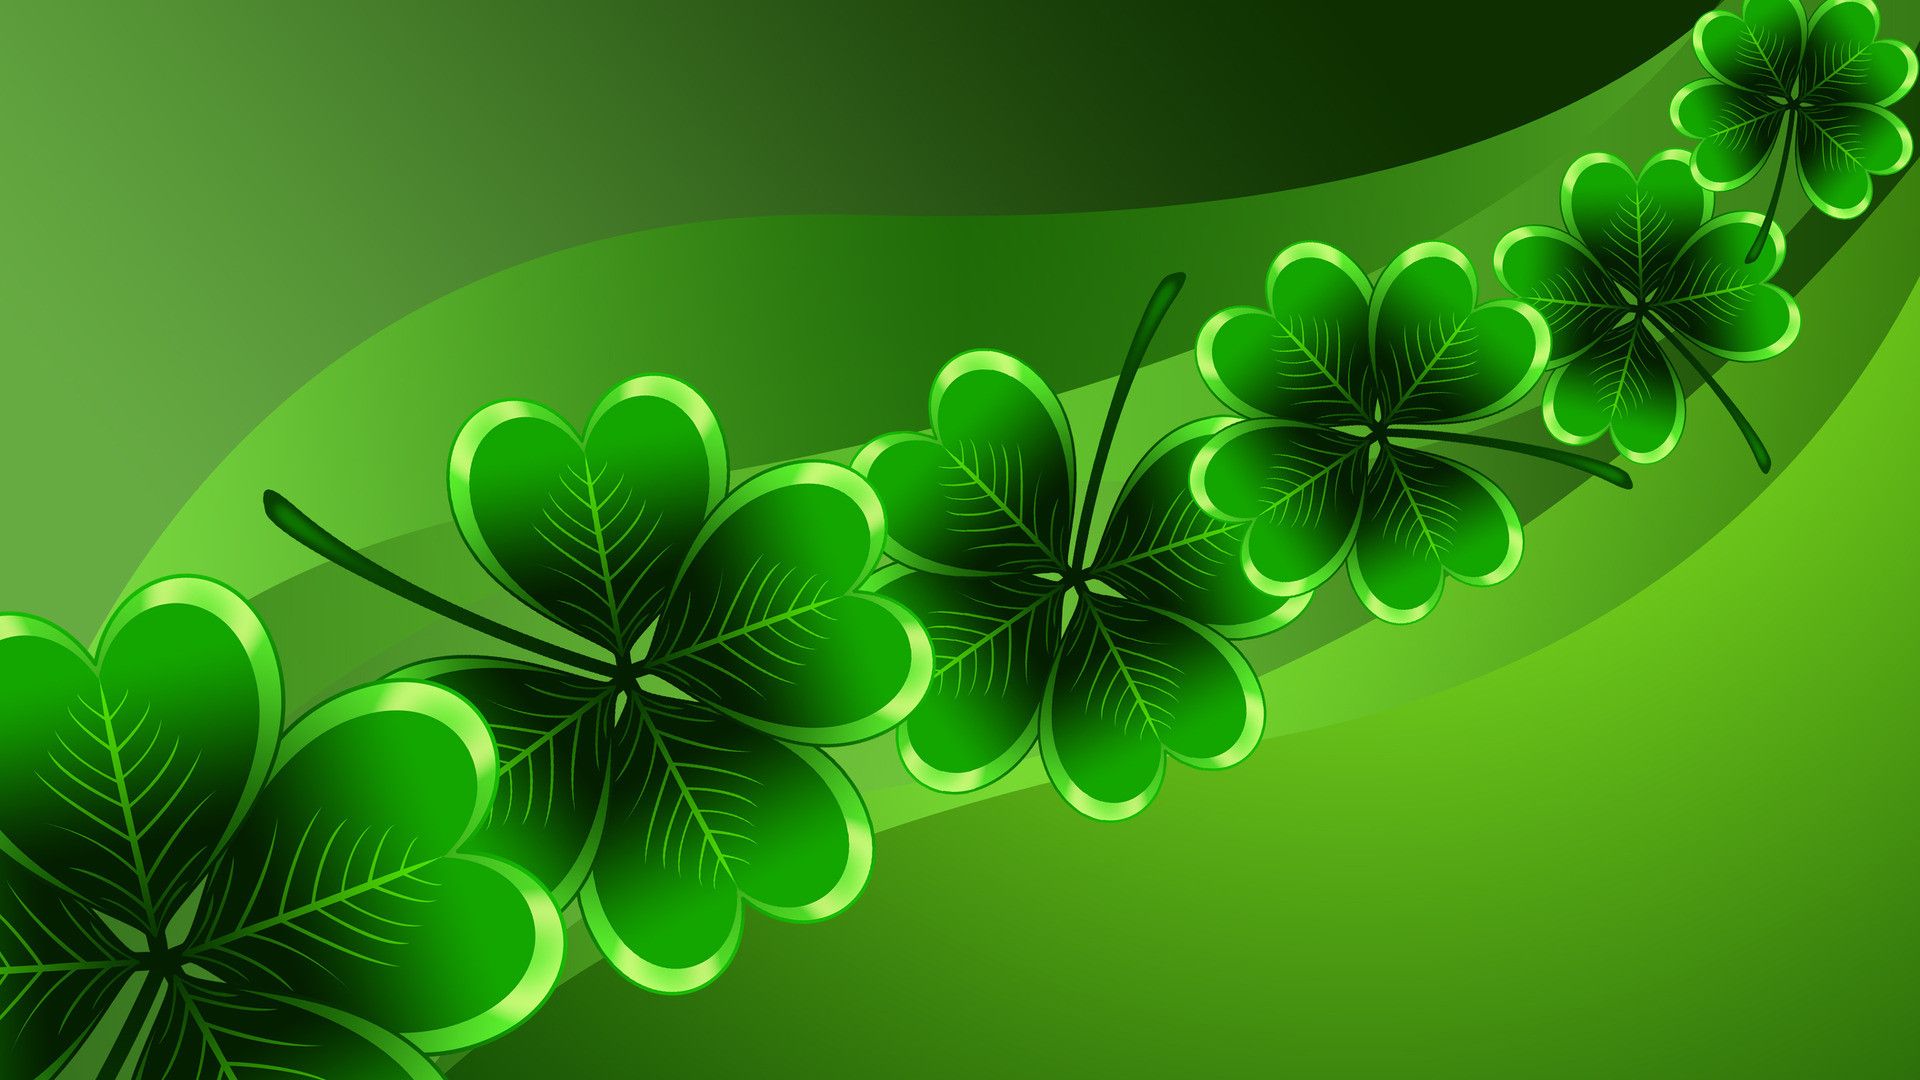 Với những gam màu xanh lá, màu vàng tươi sáng, hình ảnh về ngày lễ St. Patrick sẽ làm cho màn hình desktop của bạn trở nên sống động và nổi bật hơn bao giờ hết. Hãy cùng thưởng thức và truyền tải niềm vui đến mọi người!